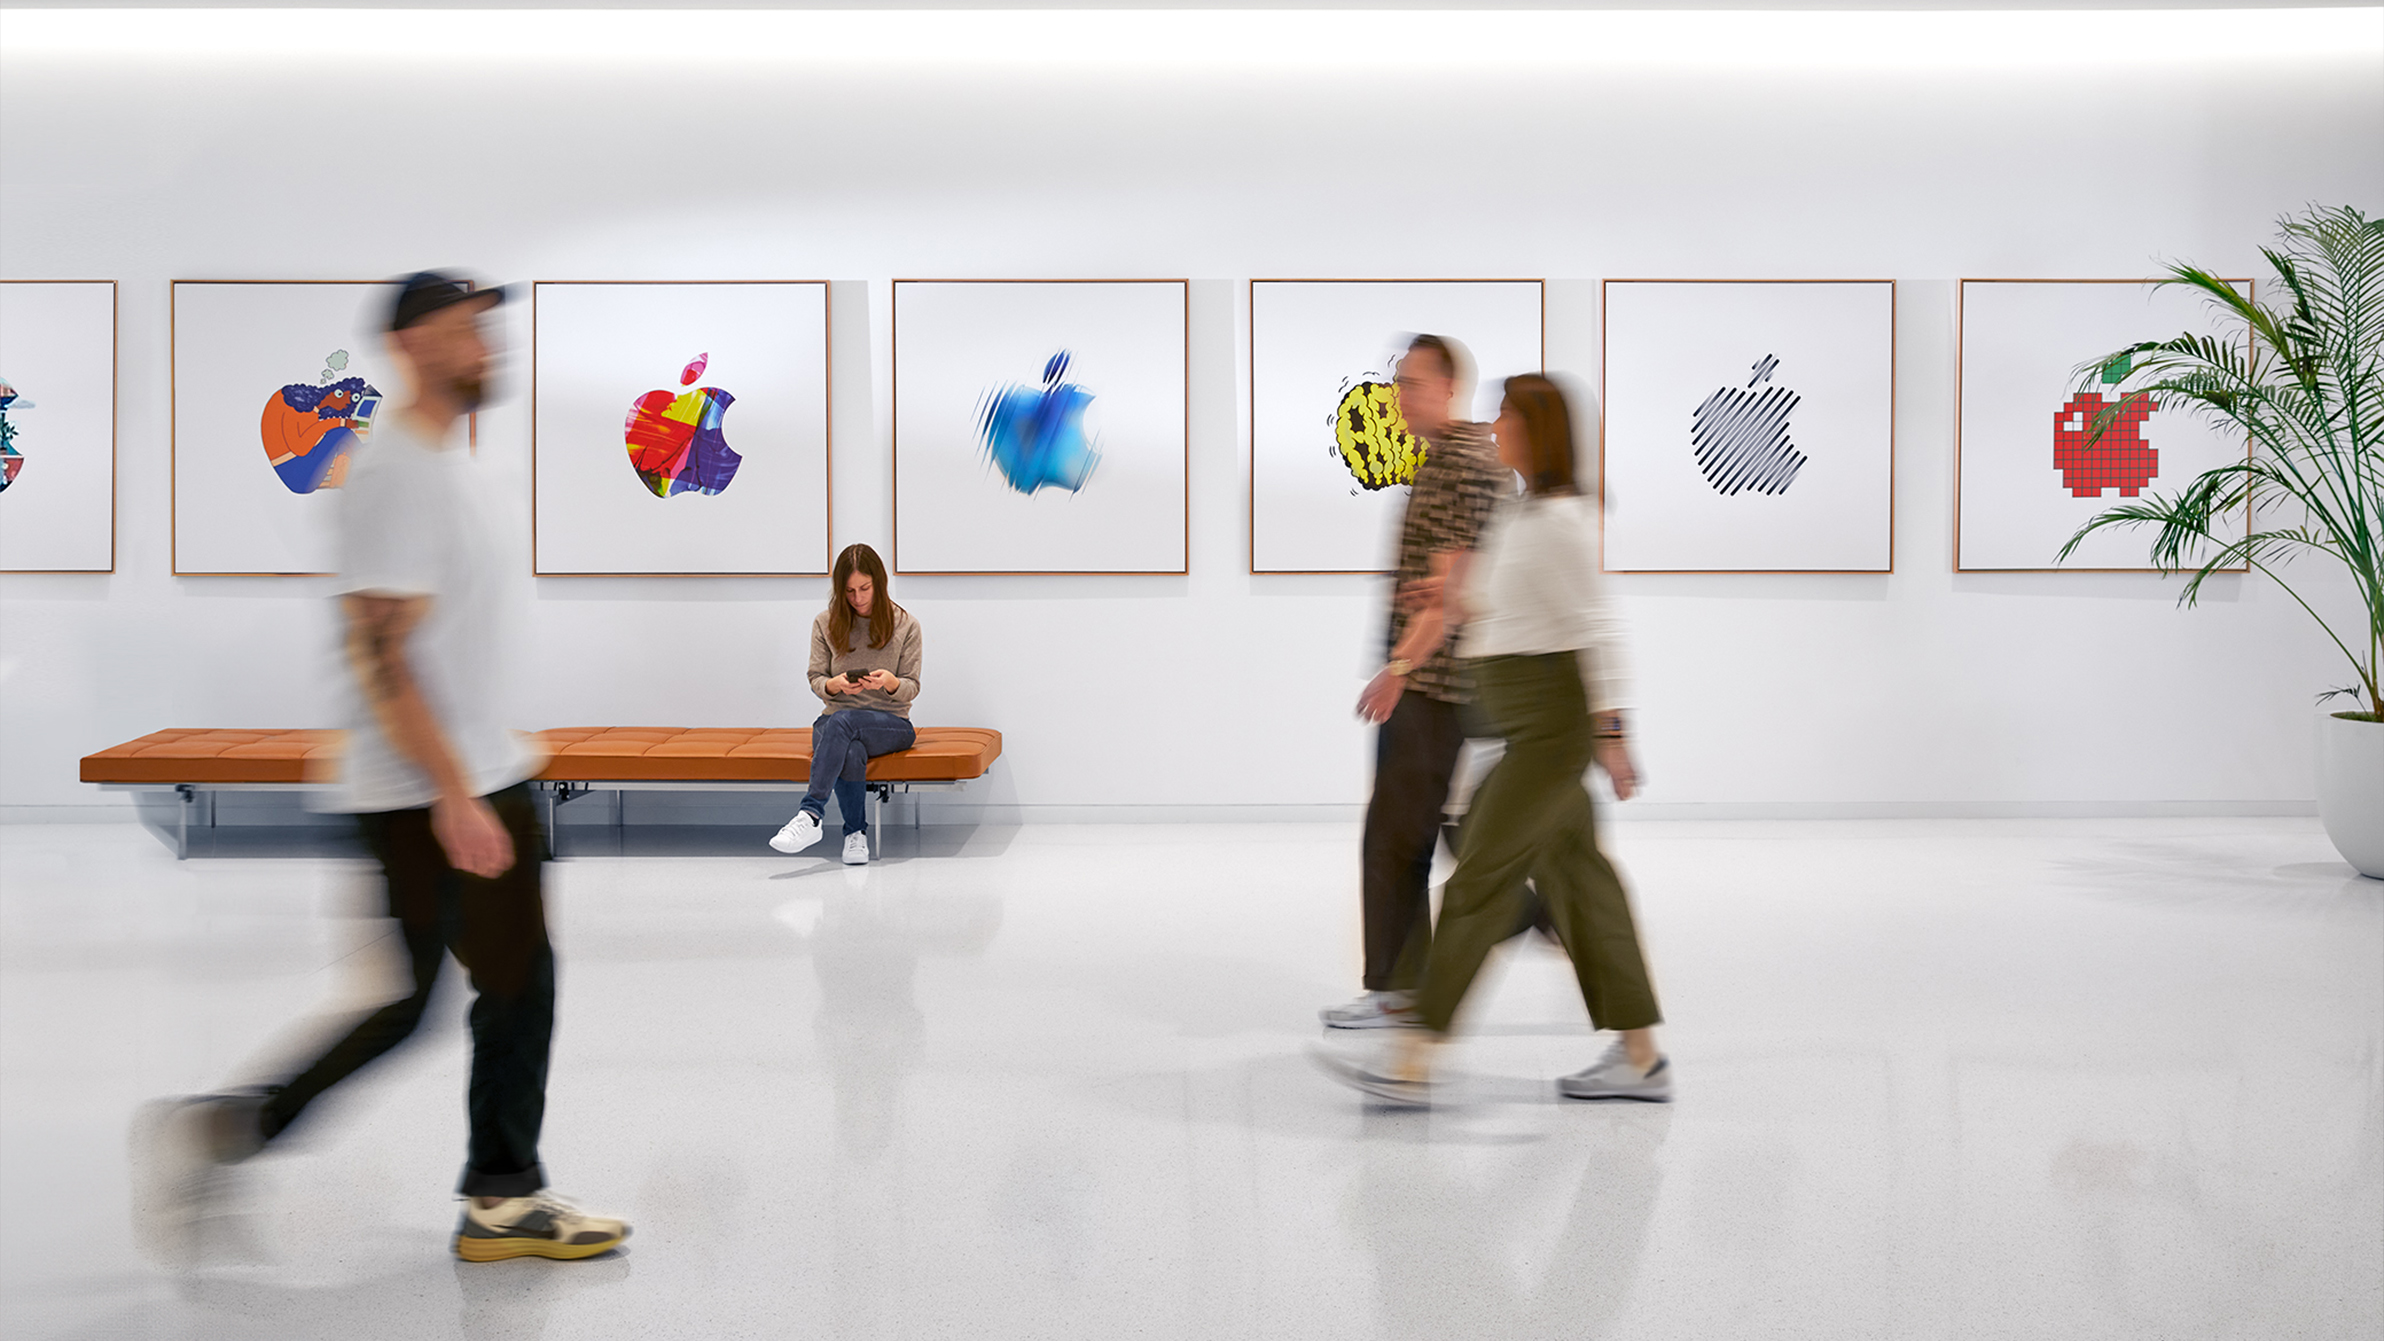 Tři zaměstnanci Apple procházejí v interiéru kolem stěny s barevnými logy Apple a jedna zaměstnankyně sedí na lavičce.